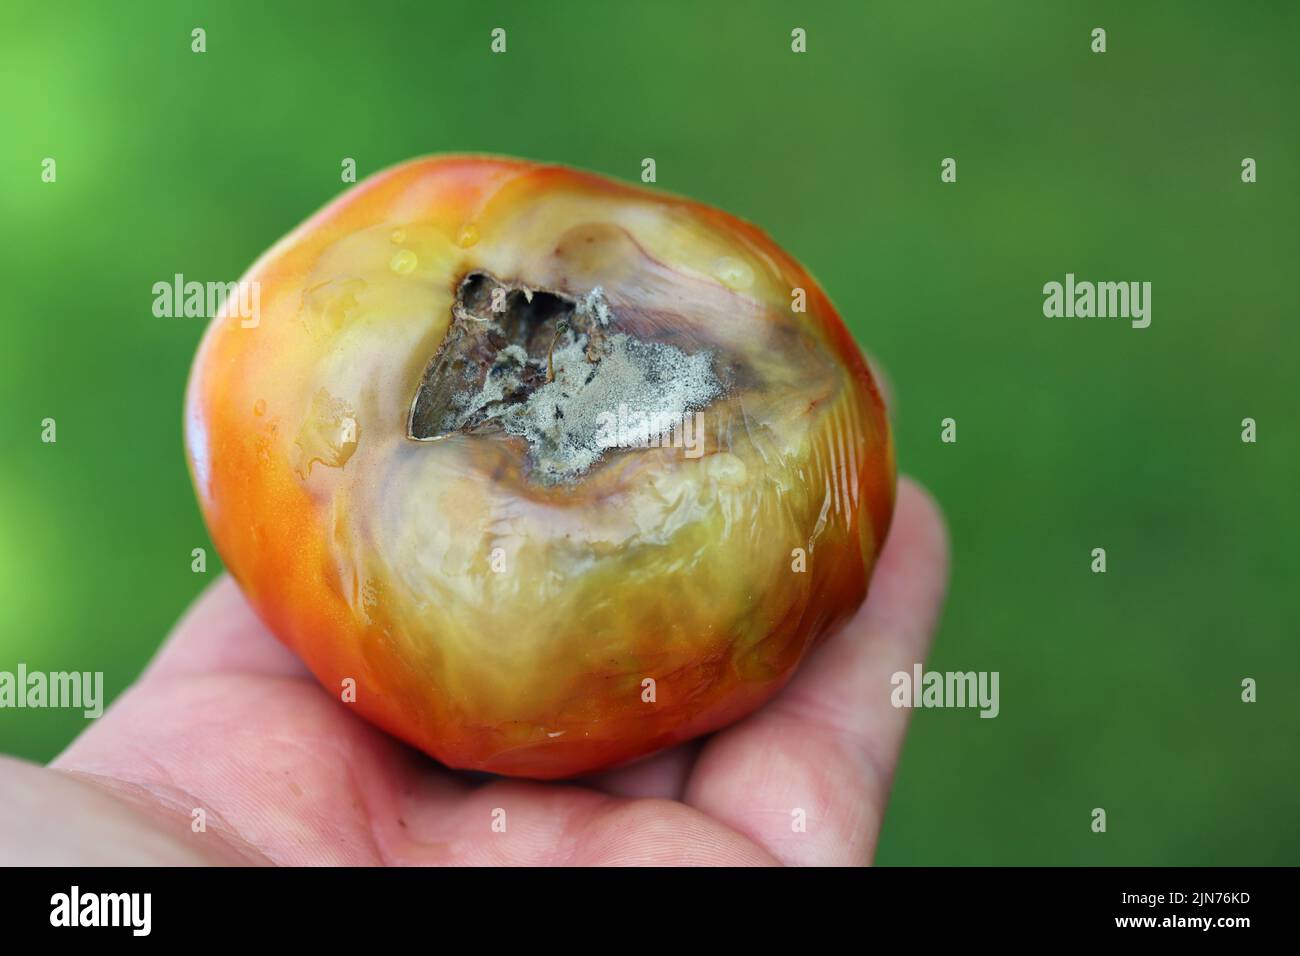 Noch grüne, unreife, junge Tomatenfrüchte, die von Blütenendfäule betroffen sind. Diese physiologische Störung in der Tomate, verursacht durch Kalziummangel. Stockfoto